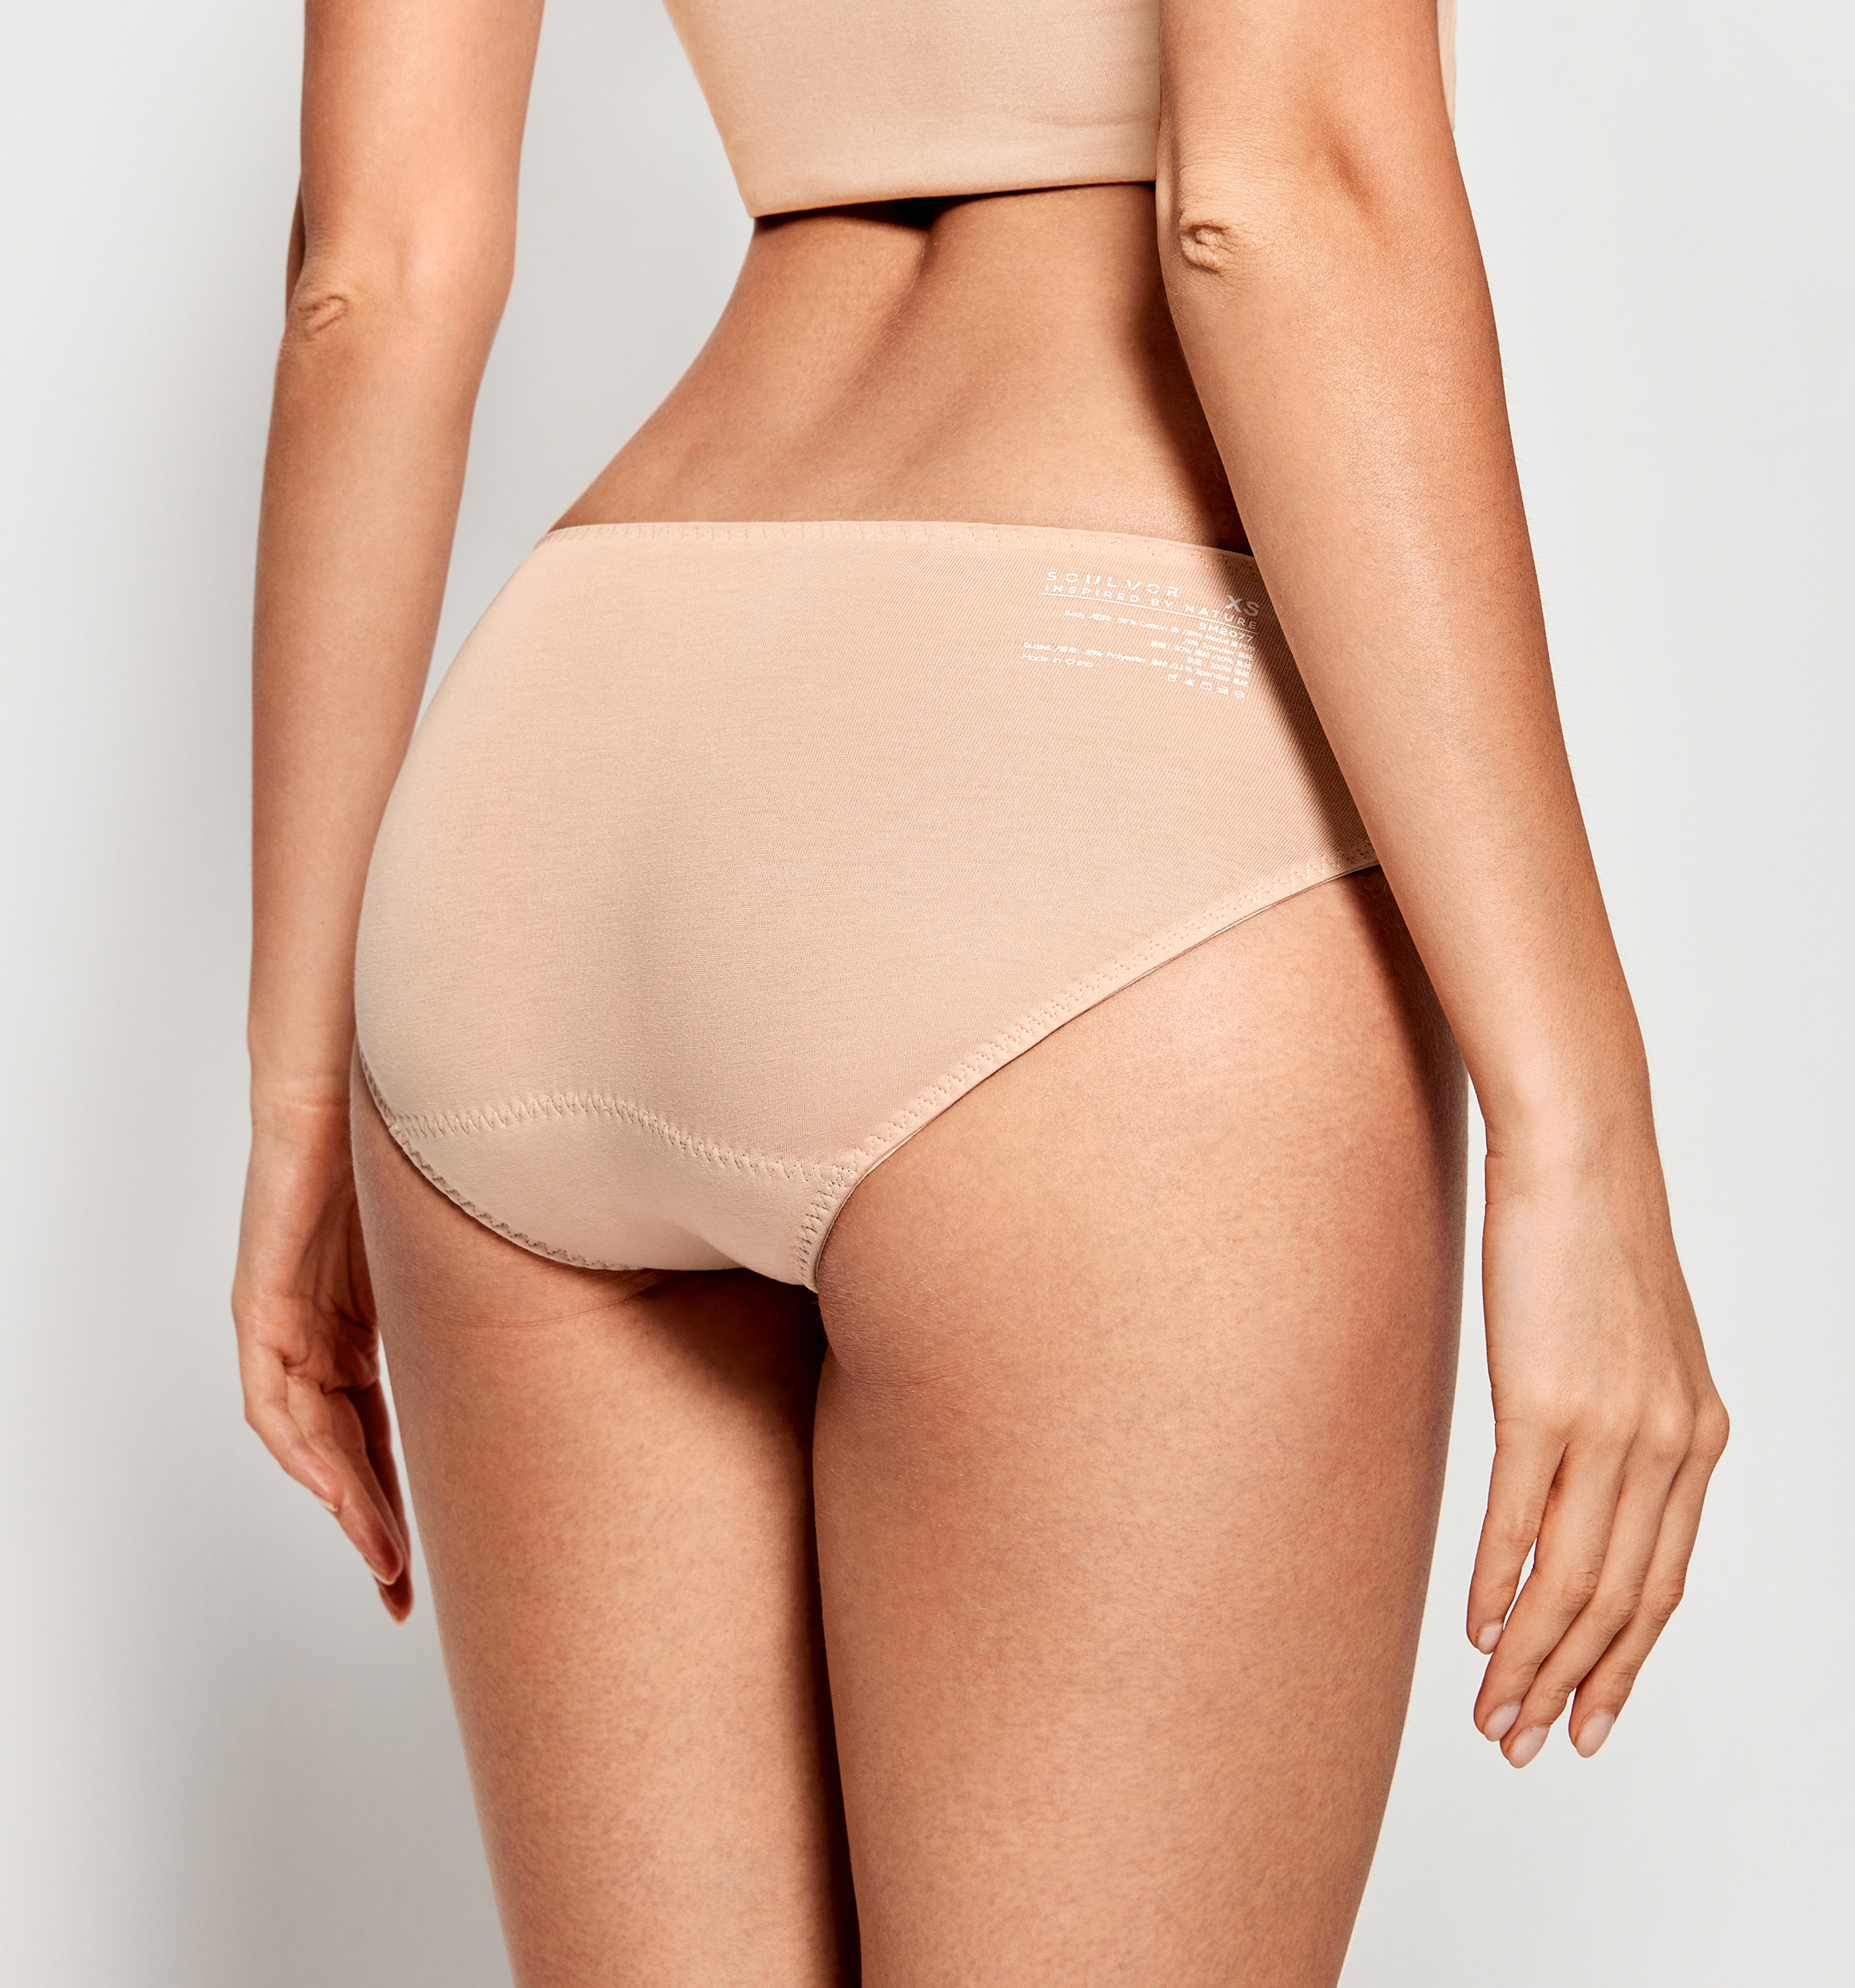 SOULVOR Natrelax Women's Period Underwear Mid Rise Cotton Bikini